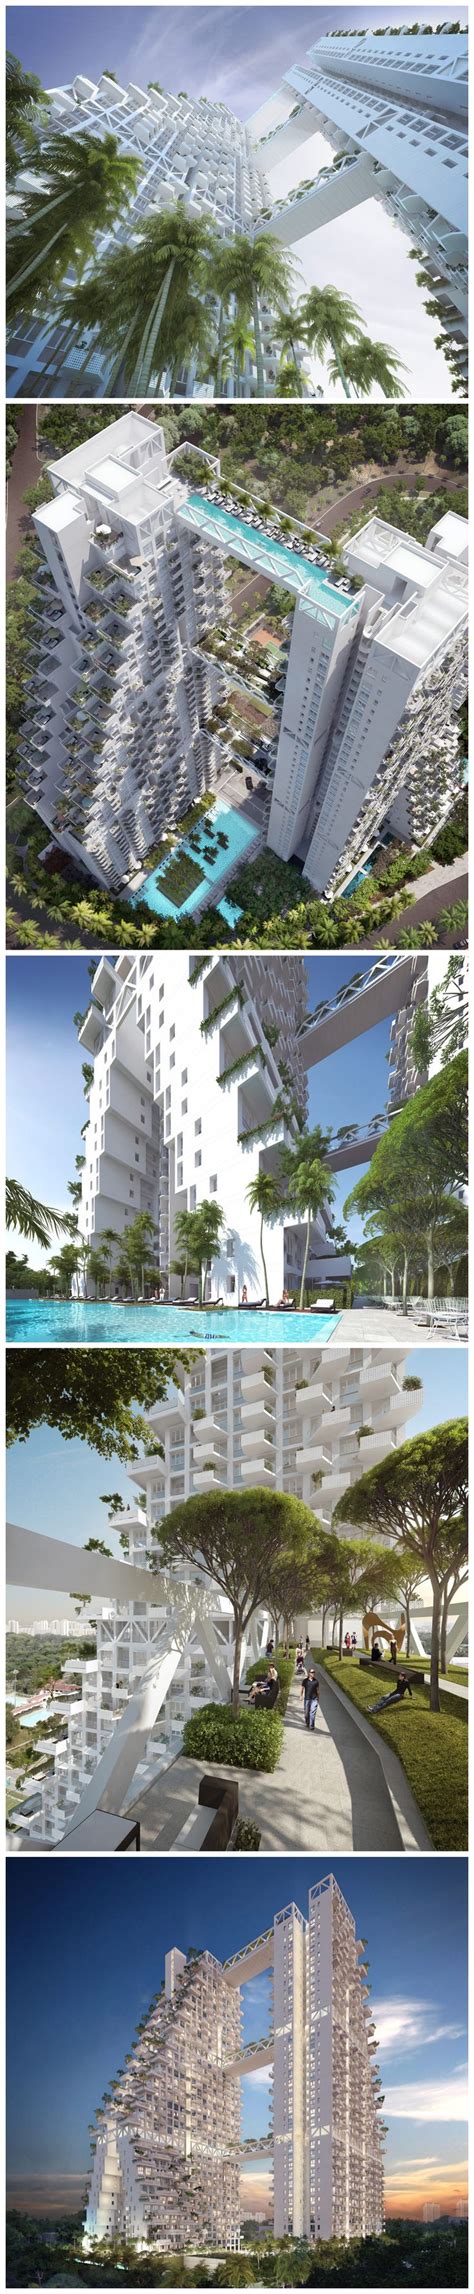 moshe safdie designs fractal based sky habitat for singapore landscape architecture plan